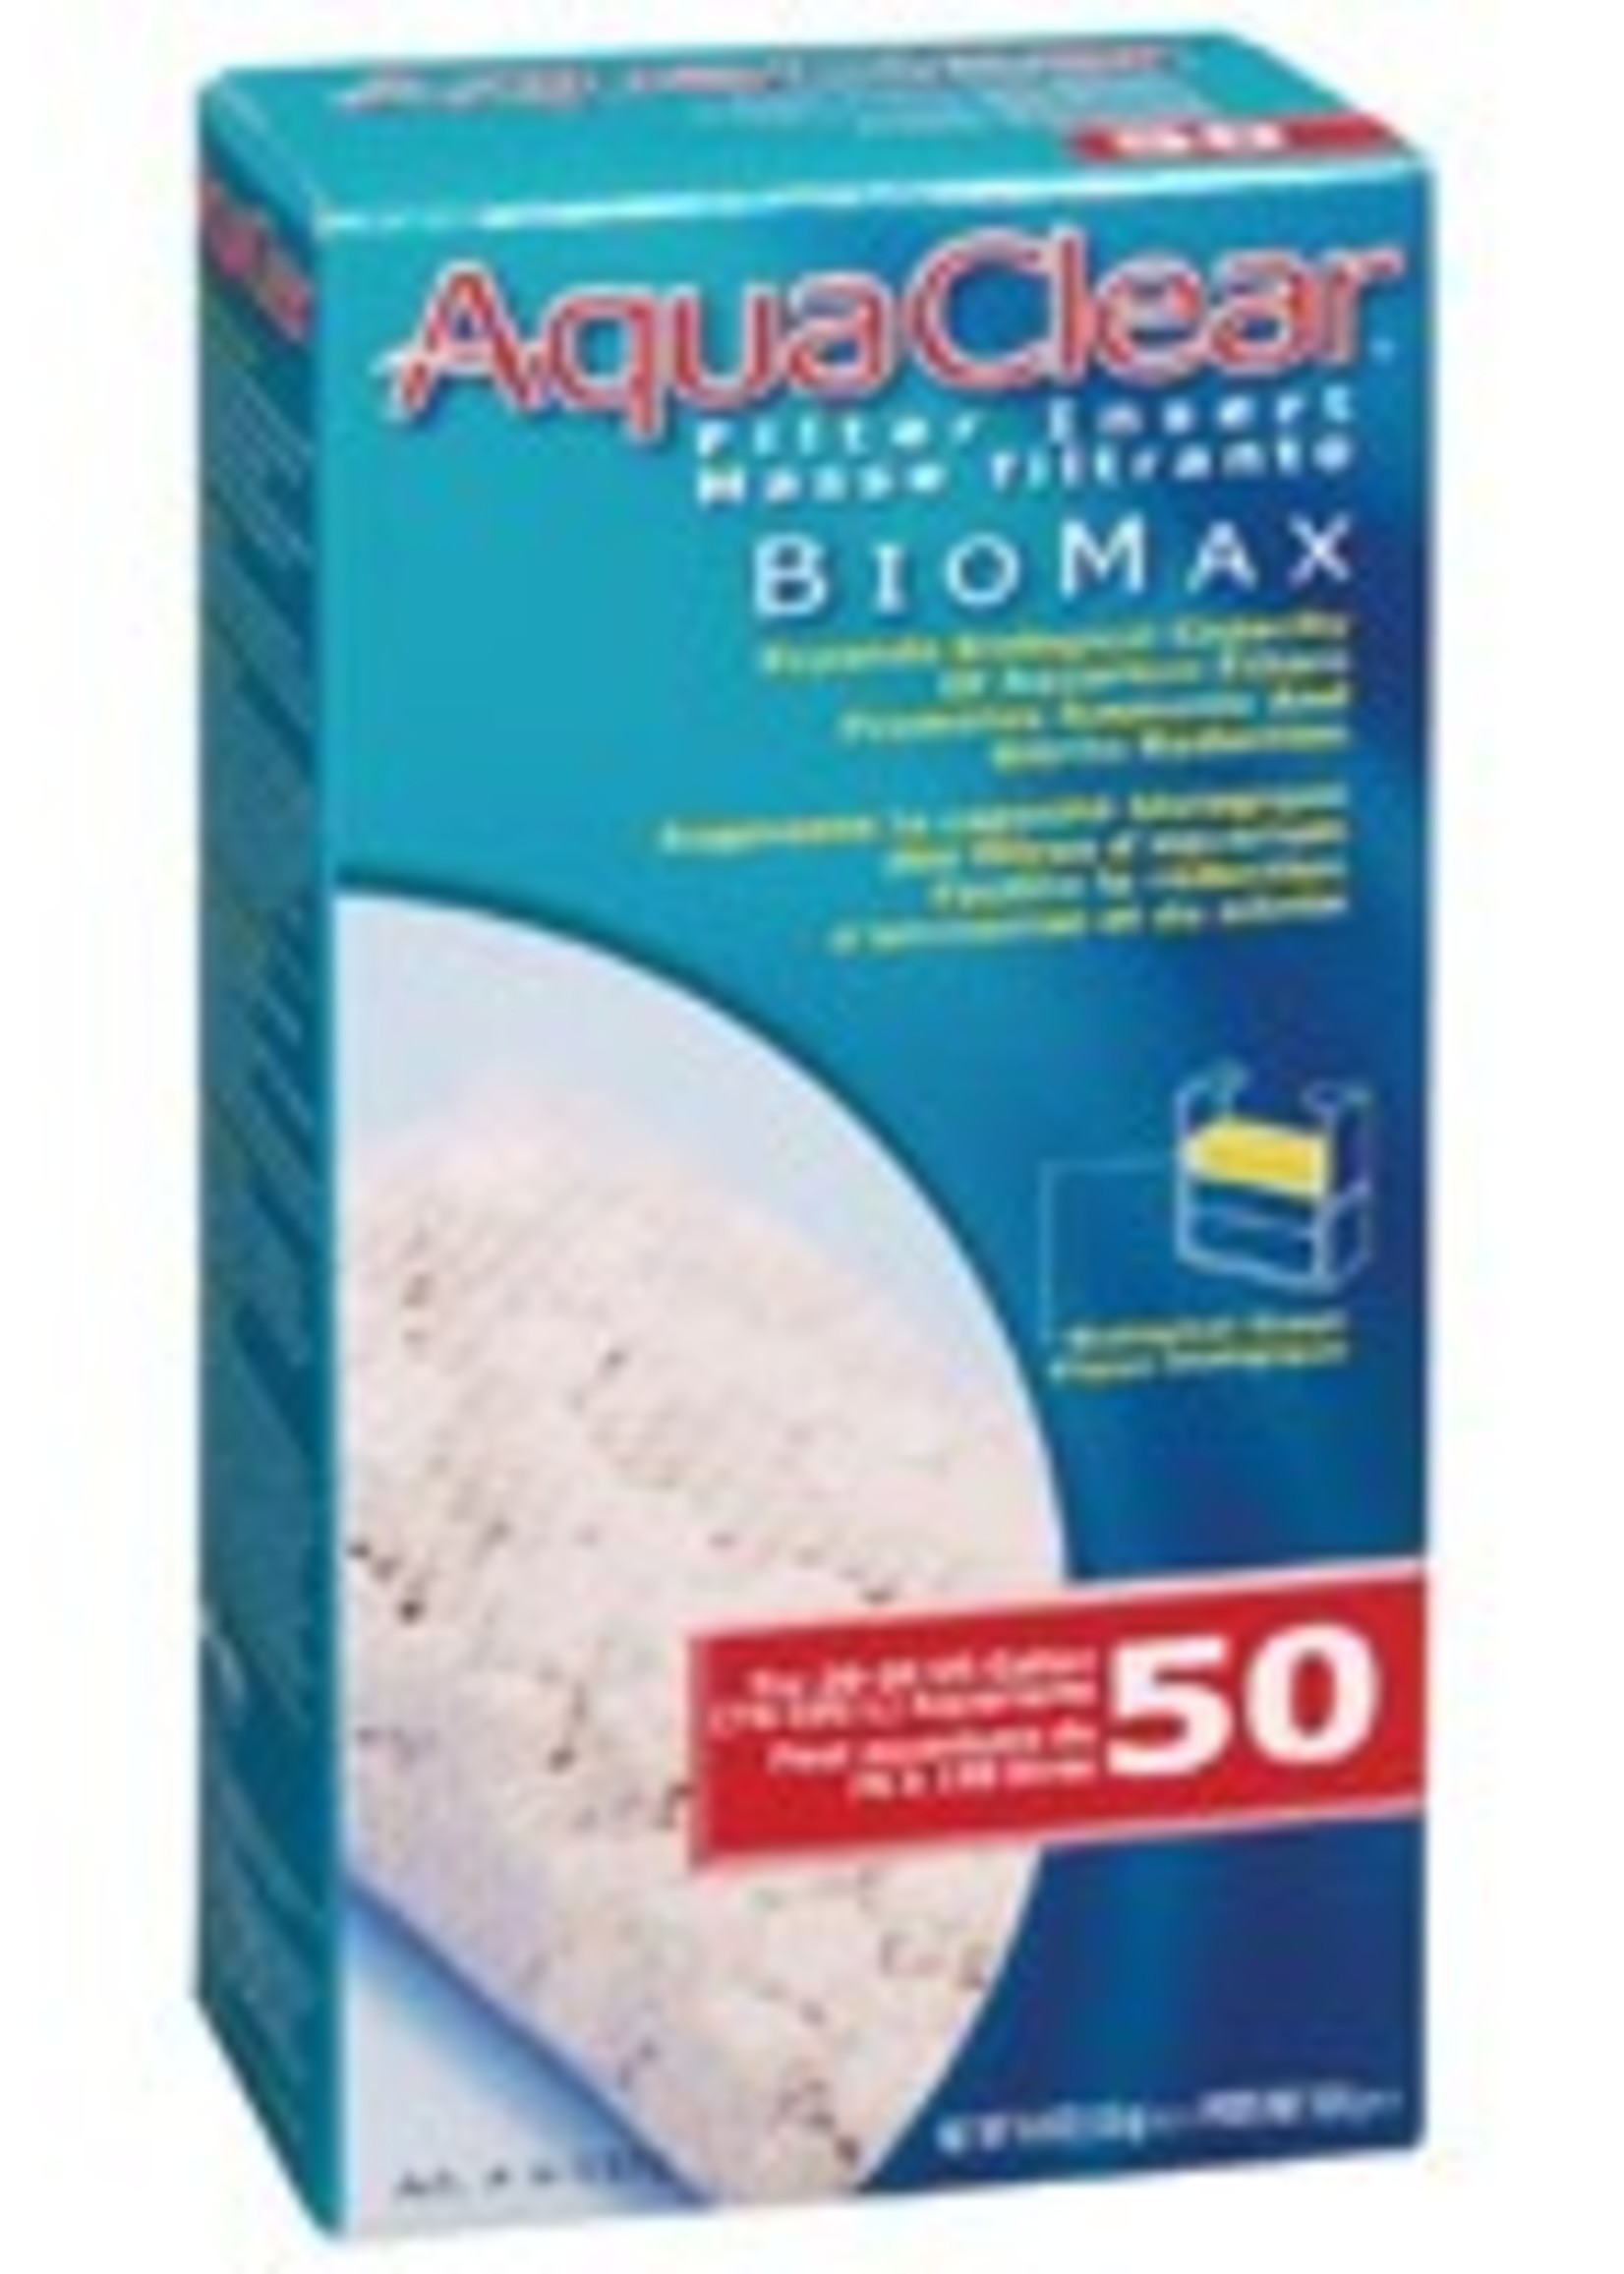 AquaClear 50 Bio-Max Insert, 125 g (4.4 oz)